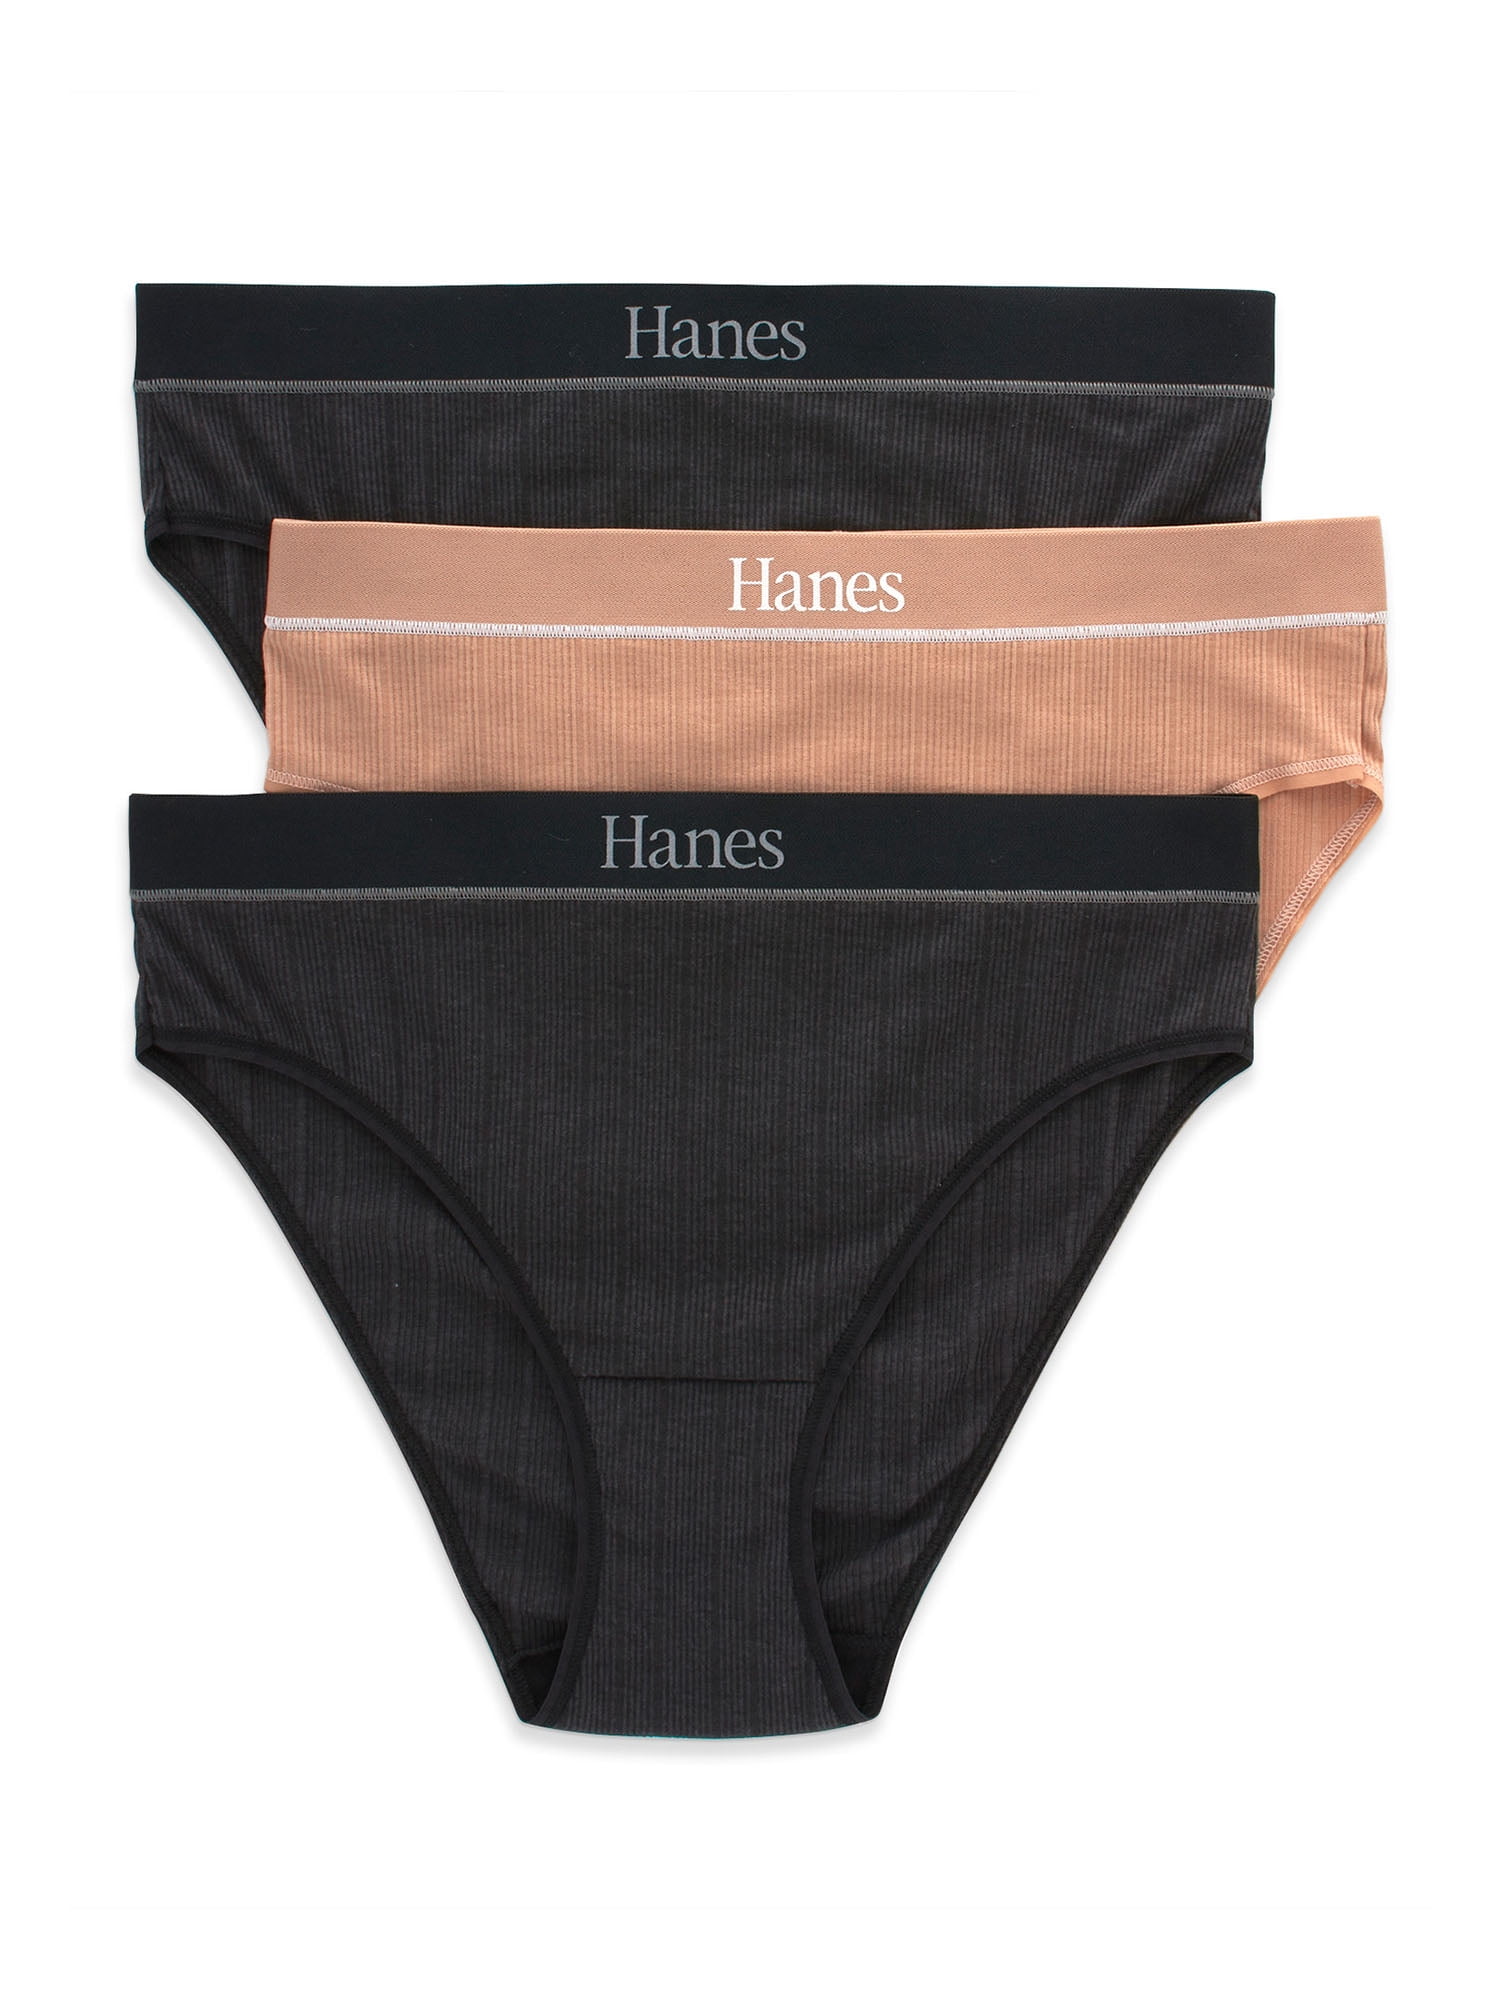  Hanes Women's 3 Pack Constant Comfort X-Temp Hi-Cut